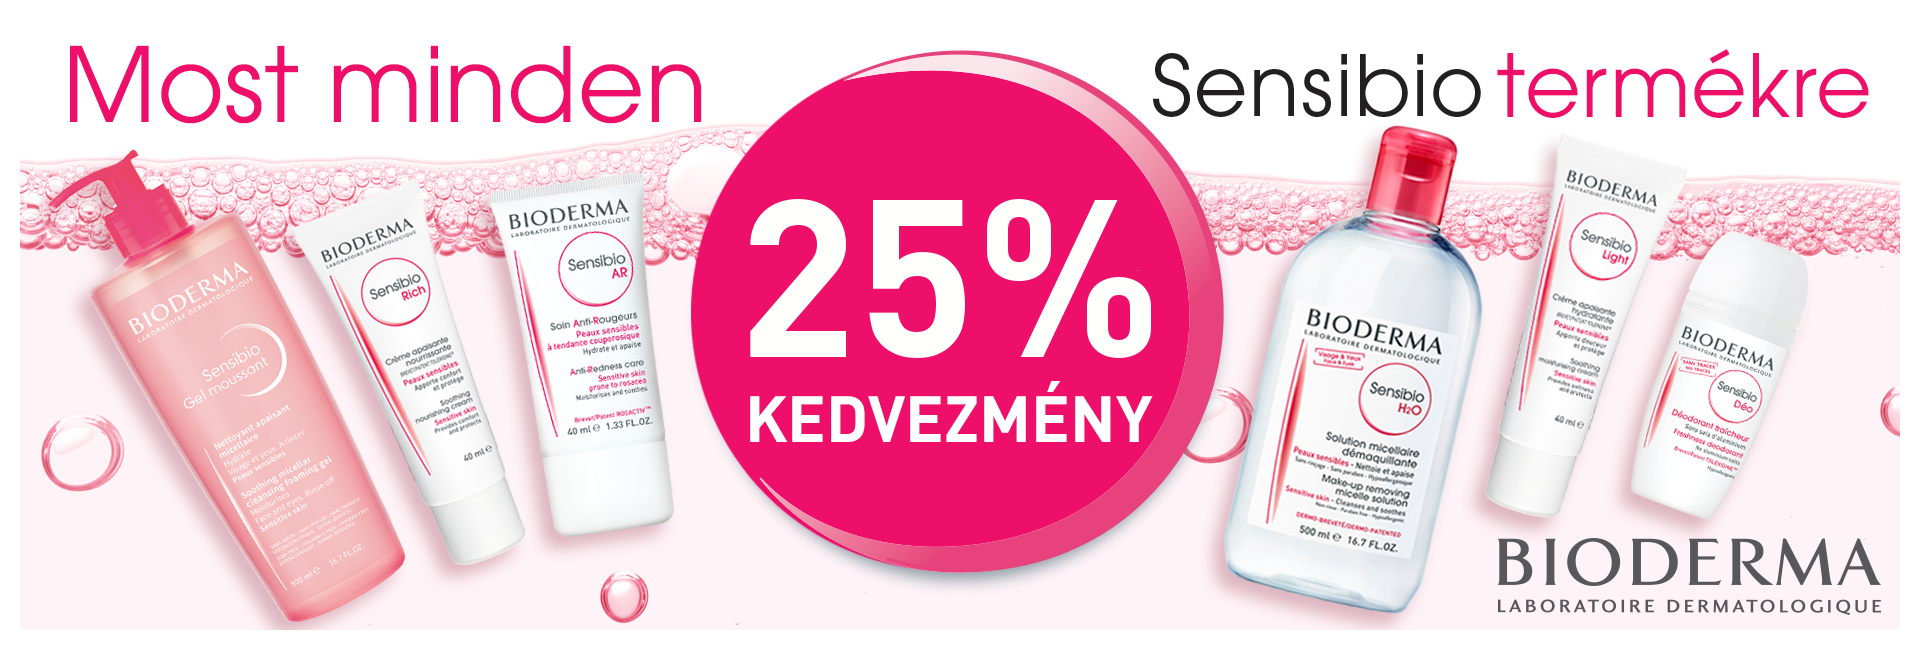 Most minden Bioderma Sensibio terméket 25% kedvezménnyel kínálunk! 